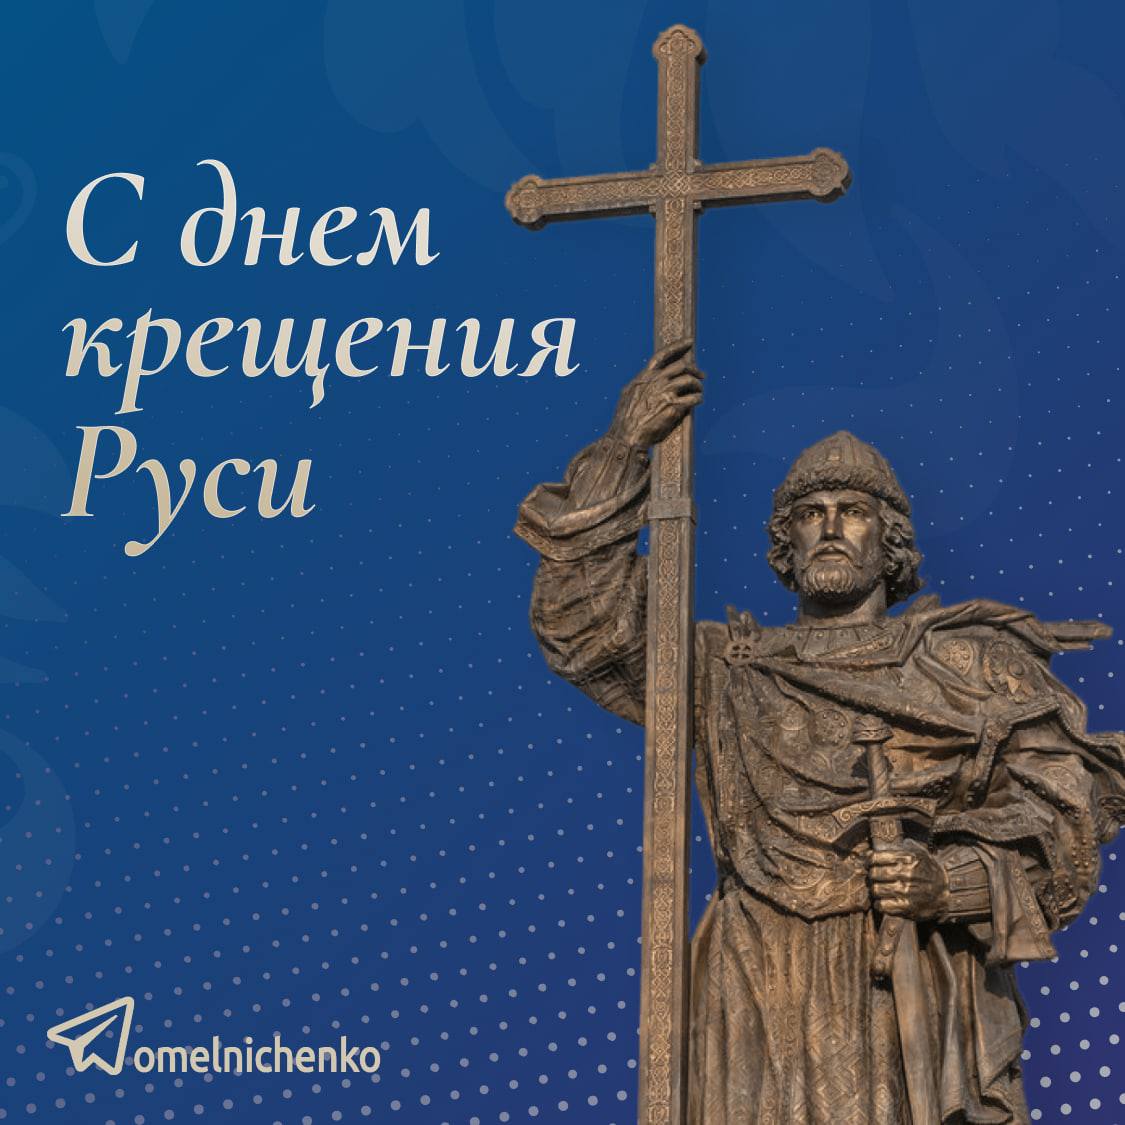 Мельниченко поздравил пензенцев с годовщиной Крещения Руси